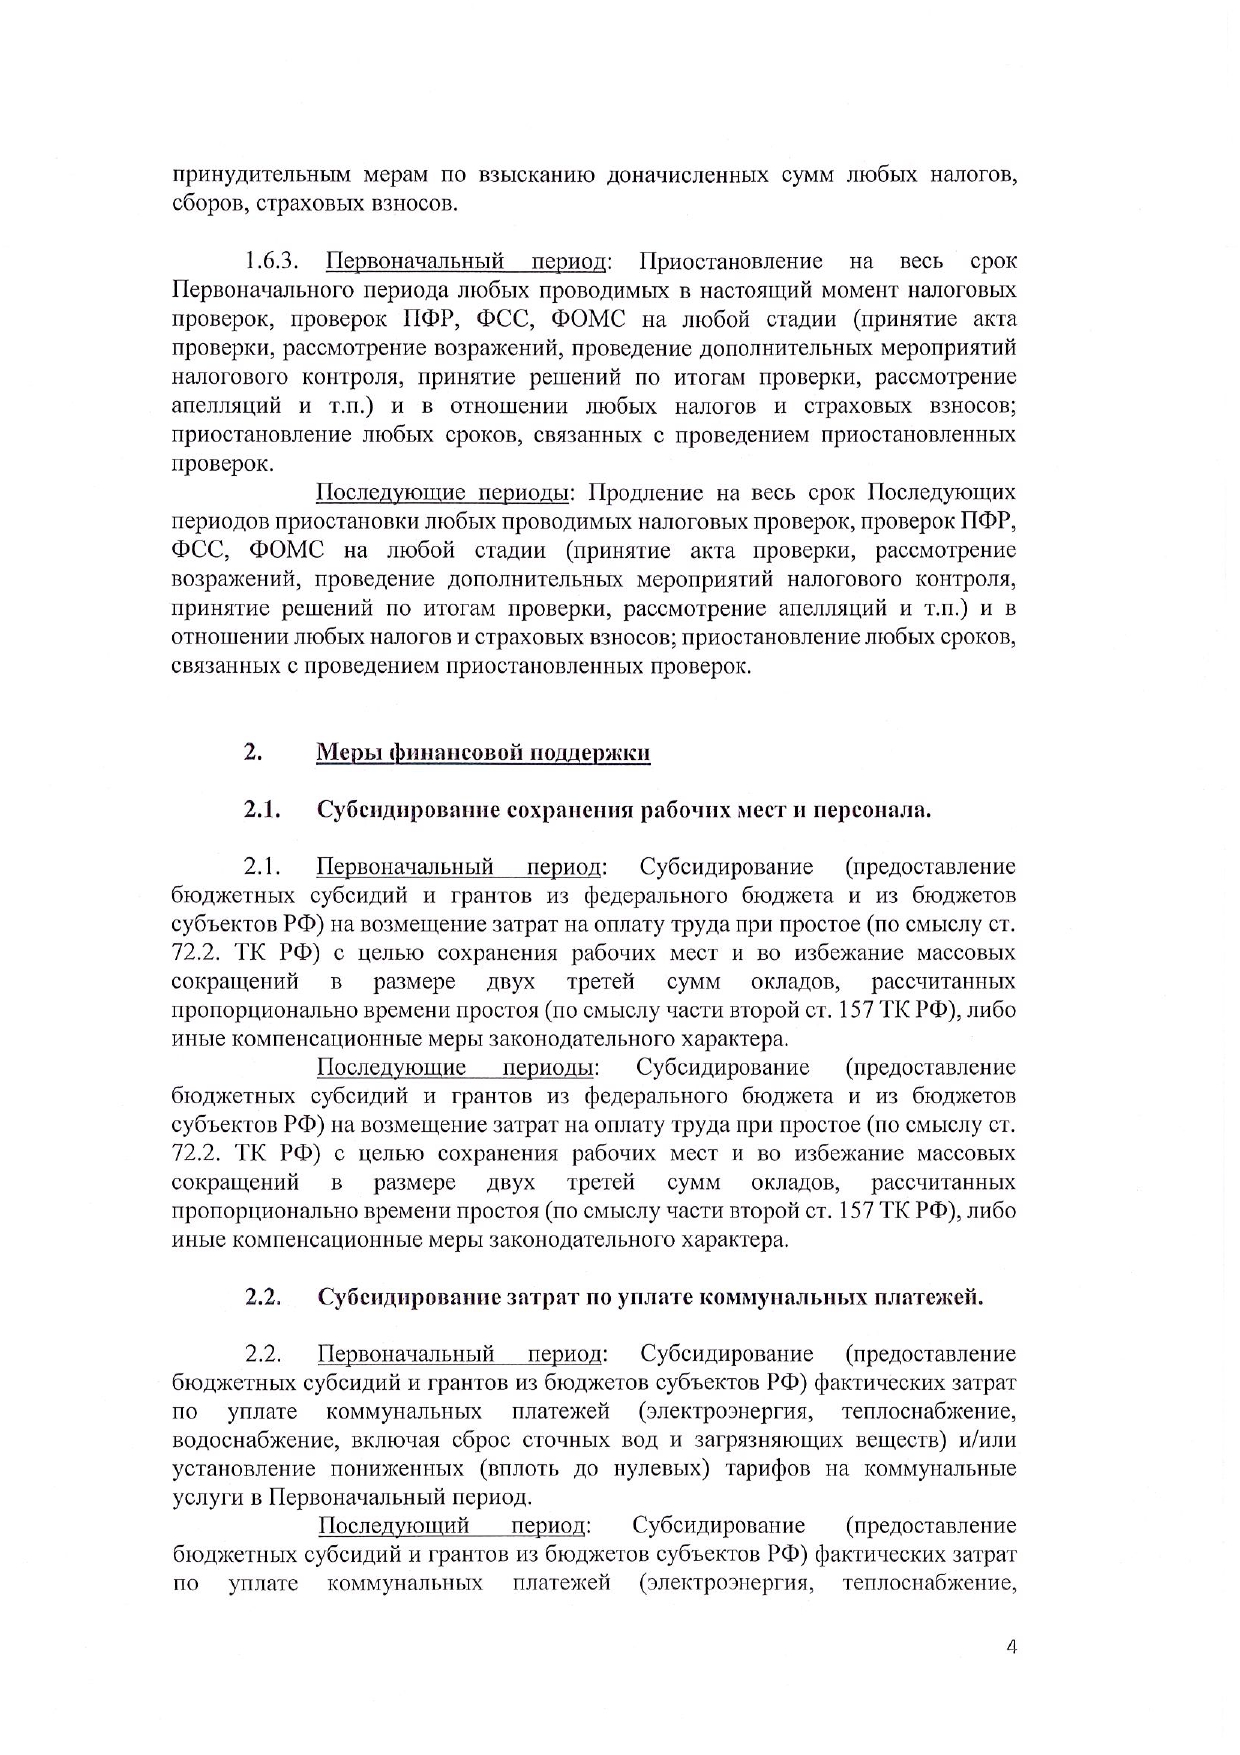 Письмо_Председателю_Правительства_РФ_2020_03_30_pdf_pdf_pdf_page-0007.jpg